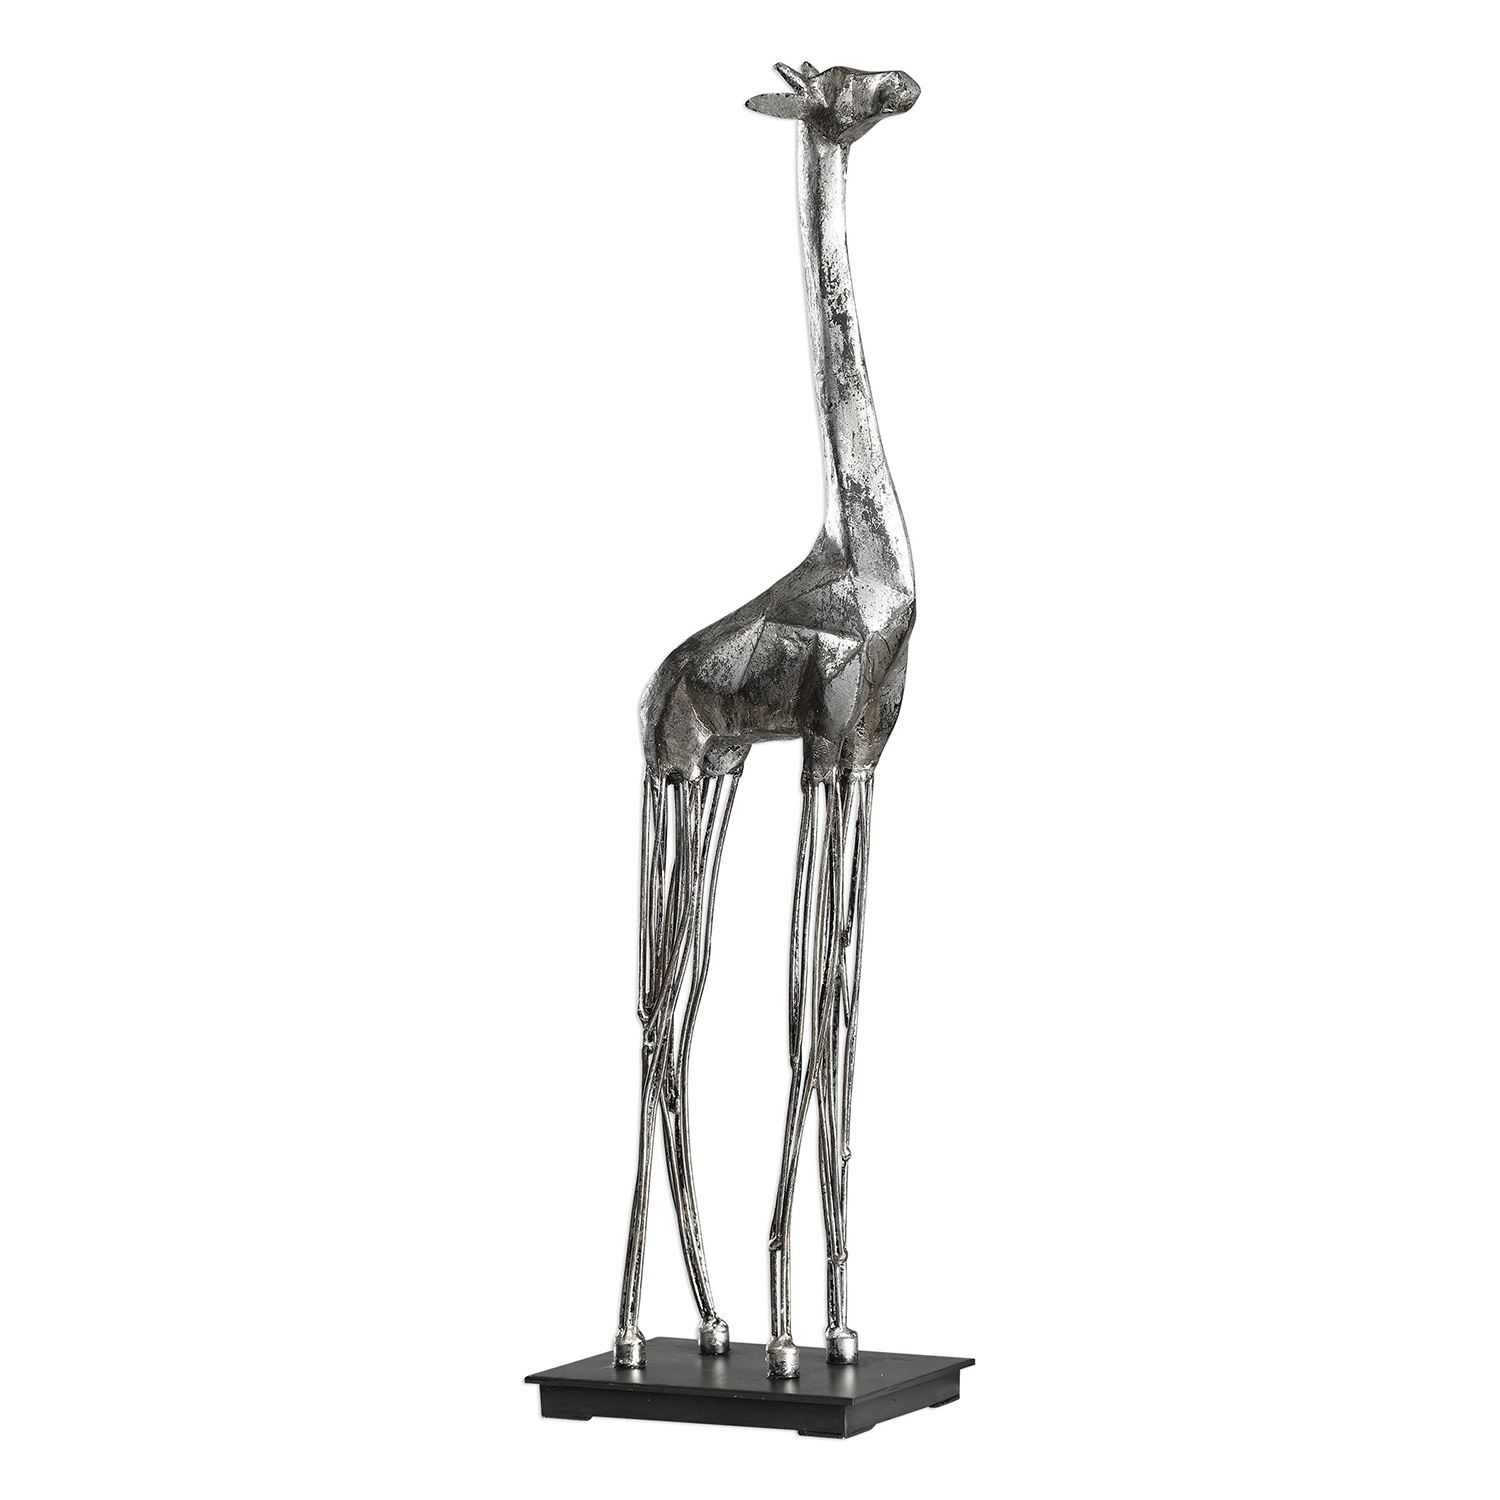 Uttermost Mireya Giraffe Sculpture - Silver